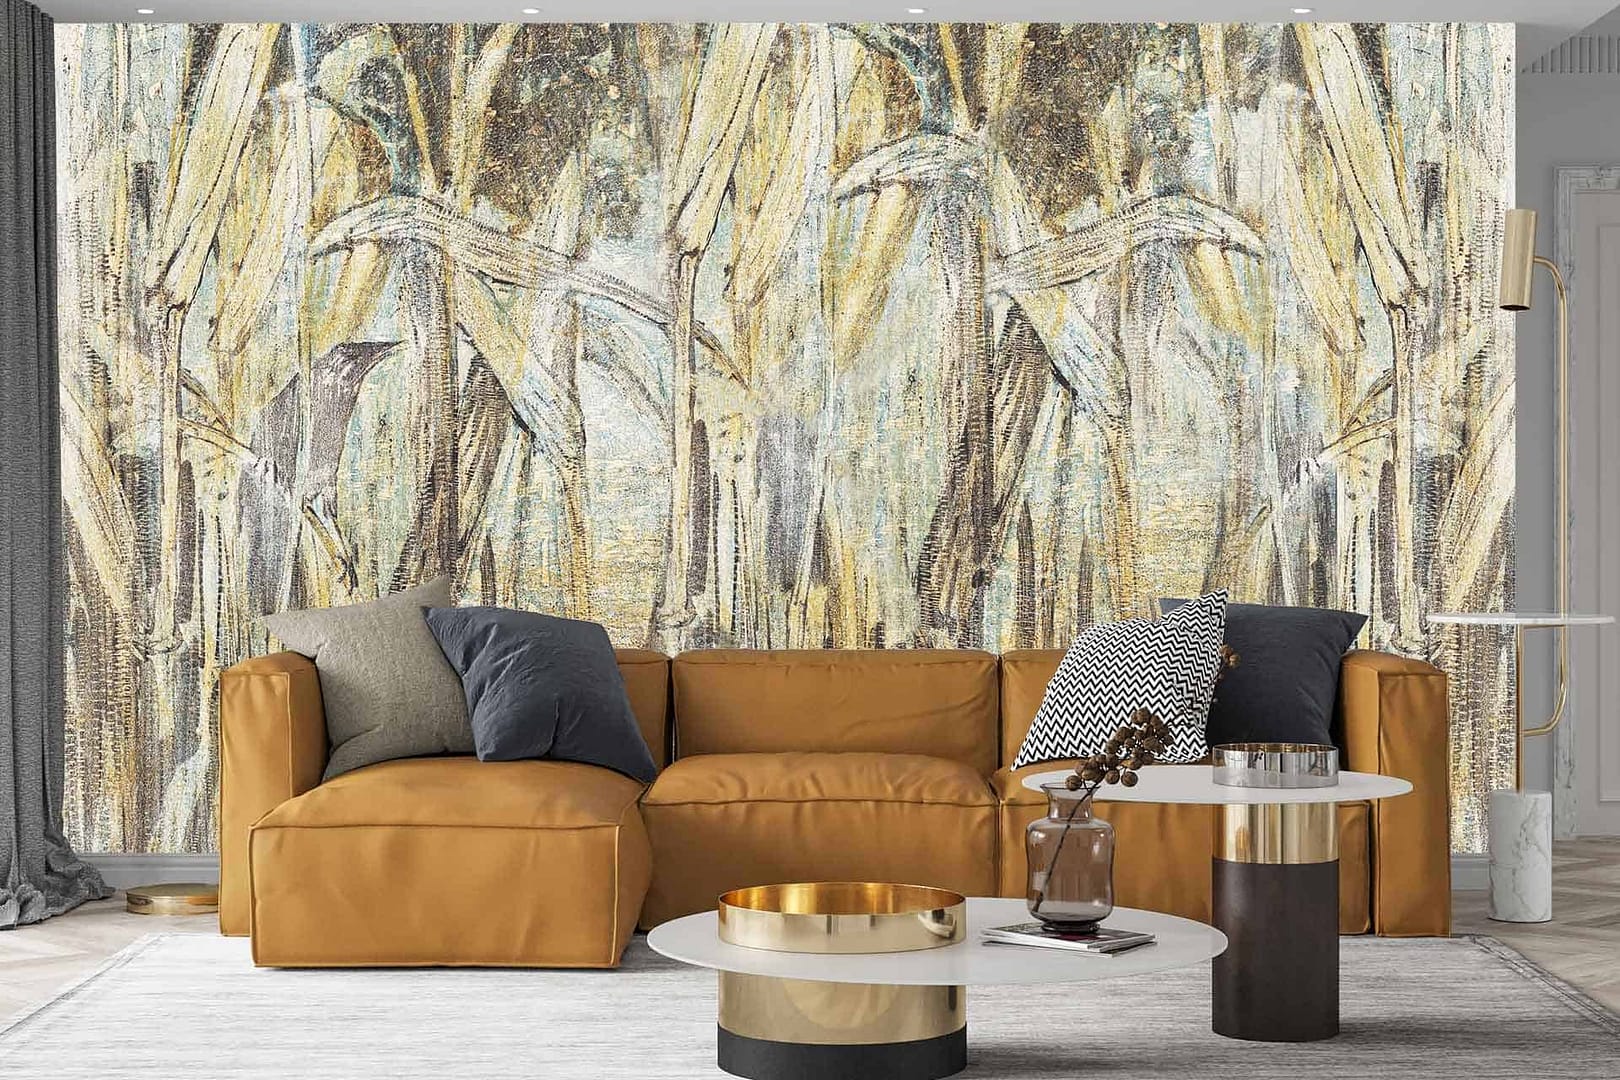 Corn Fields - a wallpaper made of golden corn fields with a grunge effect by Cara Saven Wall Design